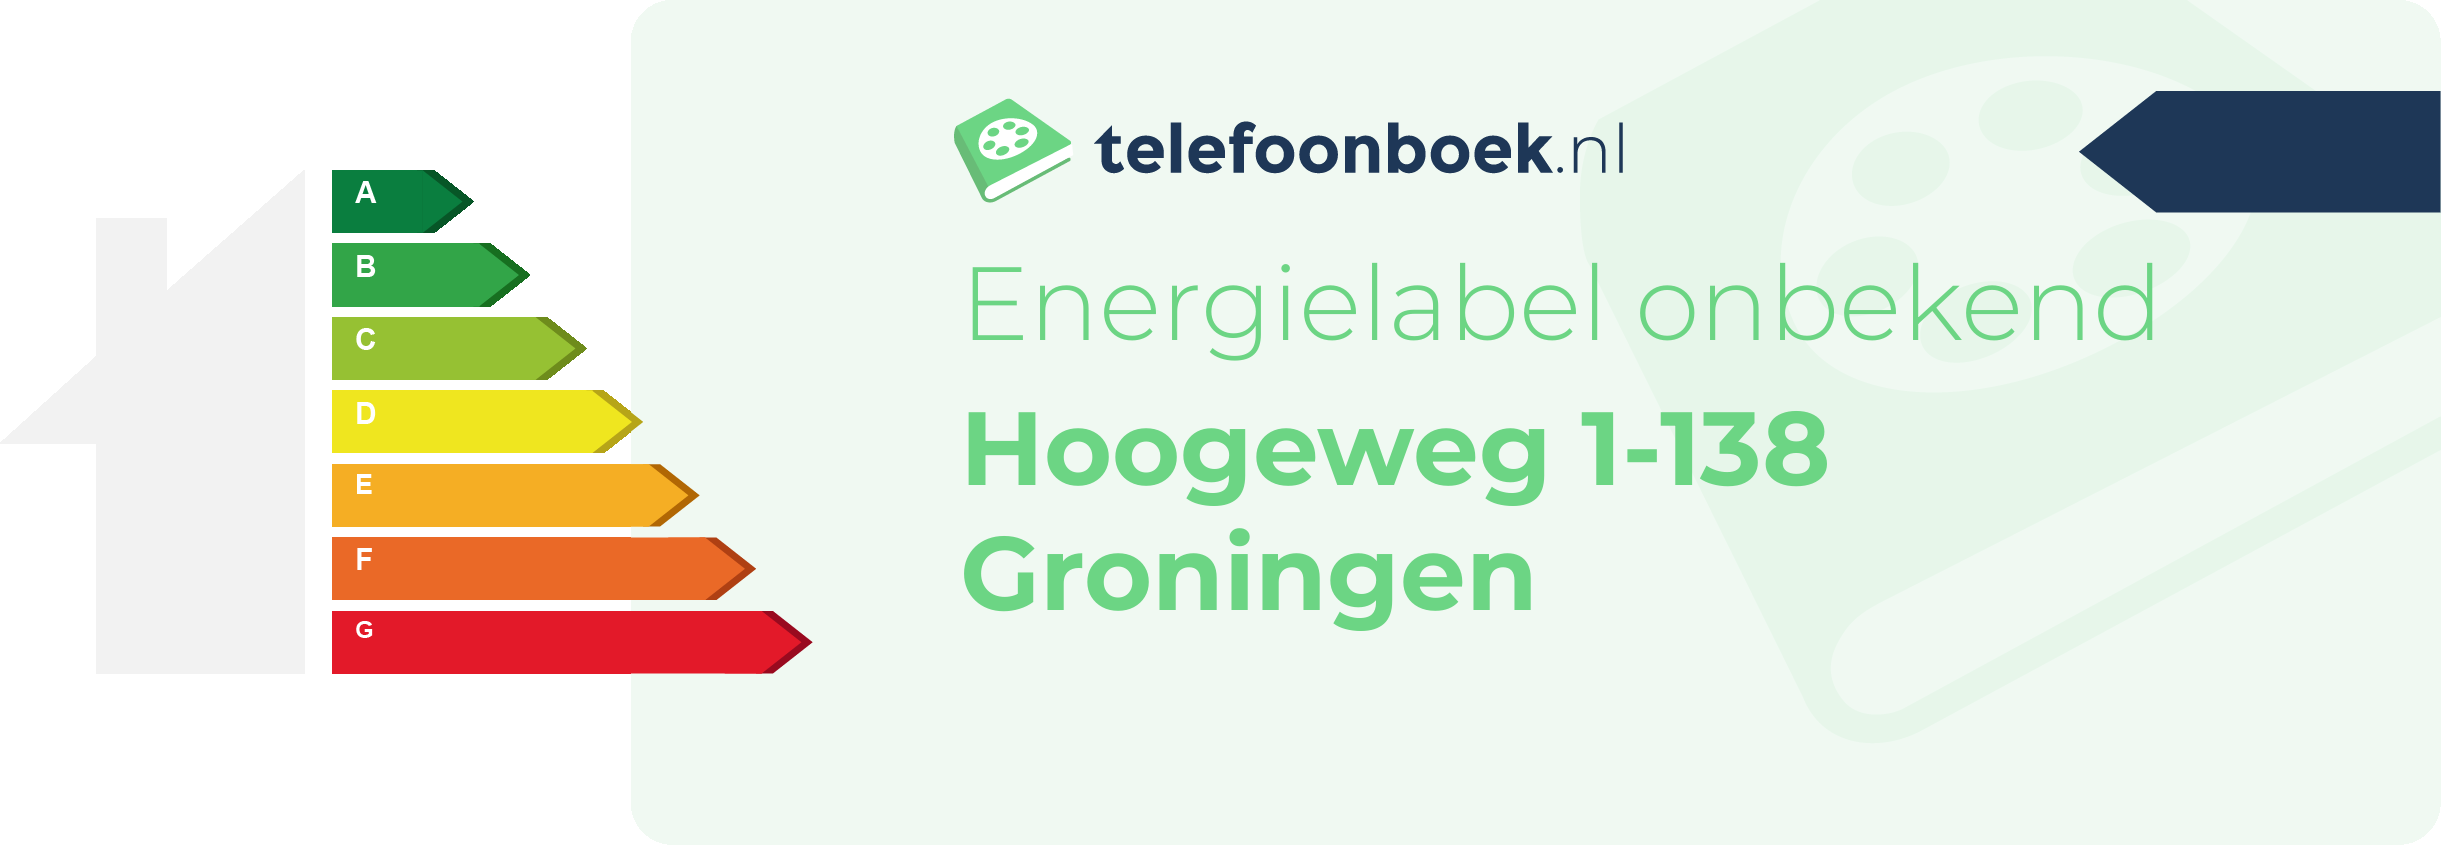 Energielabel Hoogeweg 1-138 Groningen